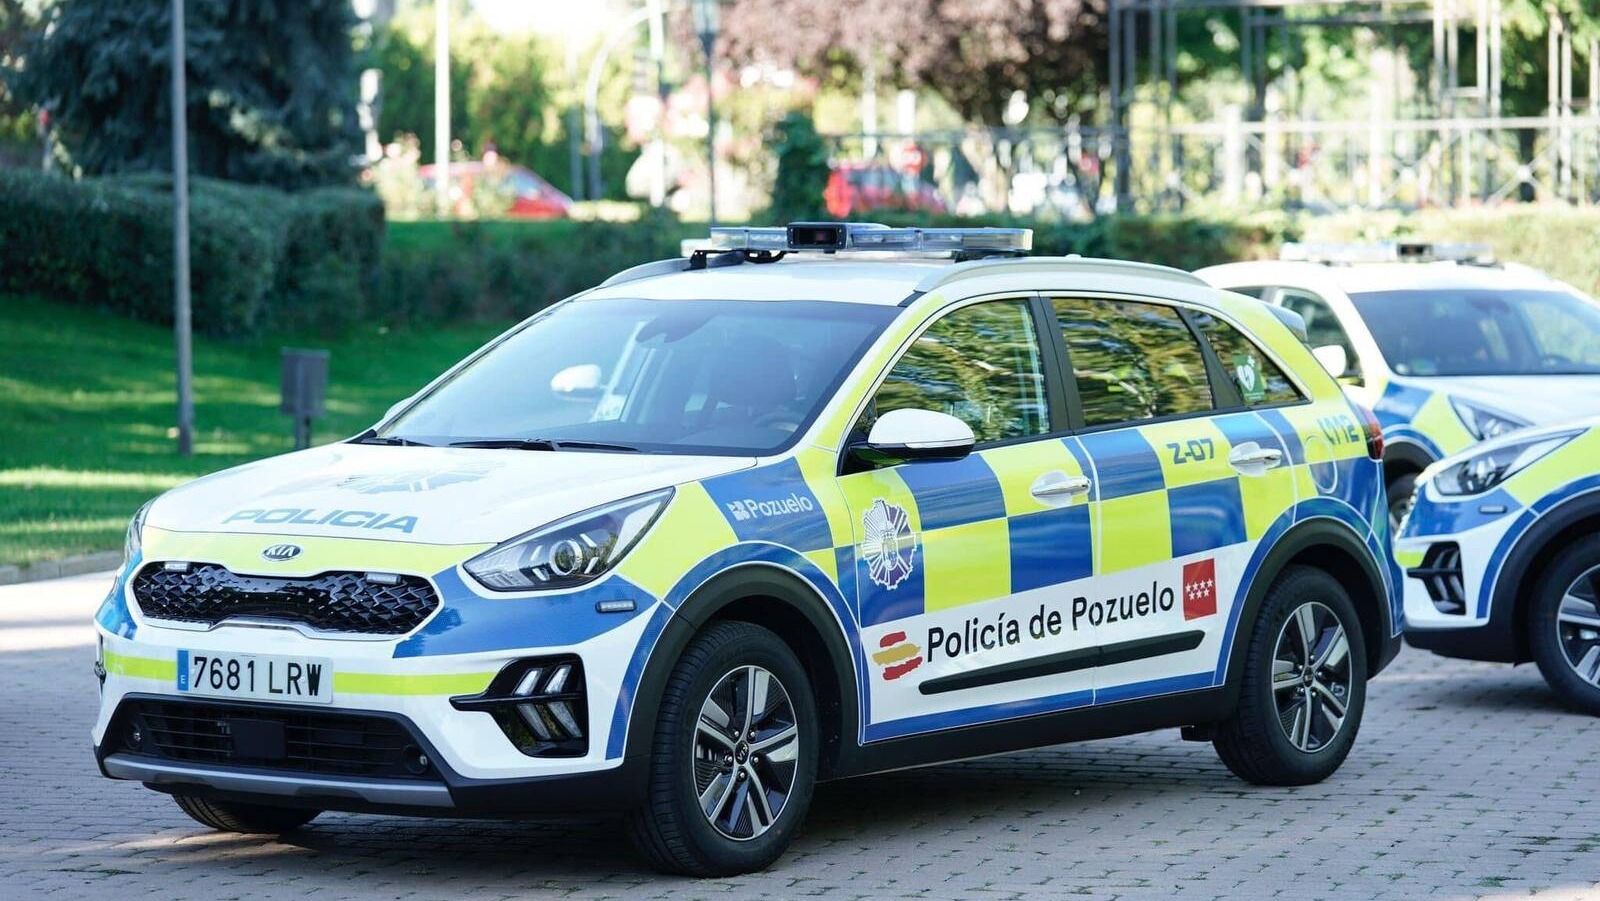 La Policía Municipal de Pozuelo de Alarcón estrena nueve coches patrulla